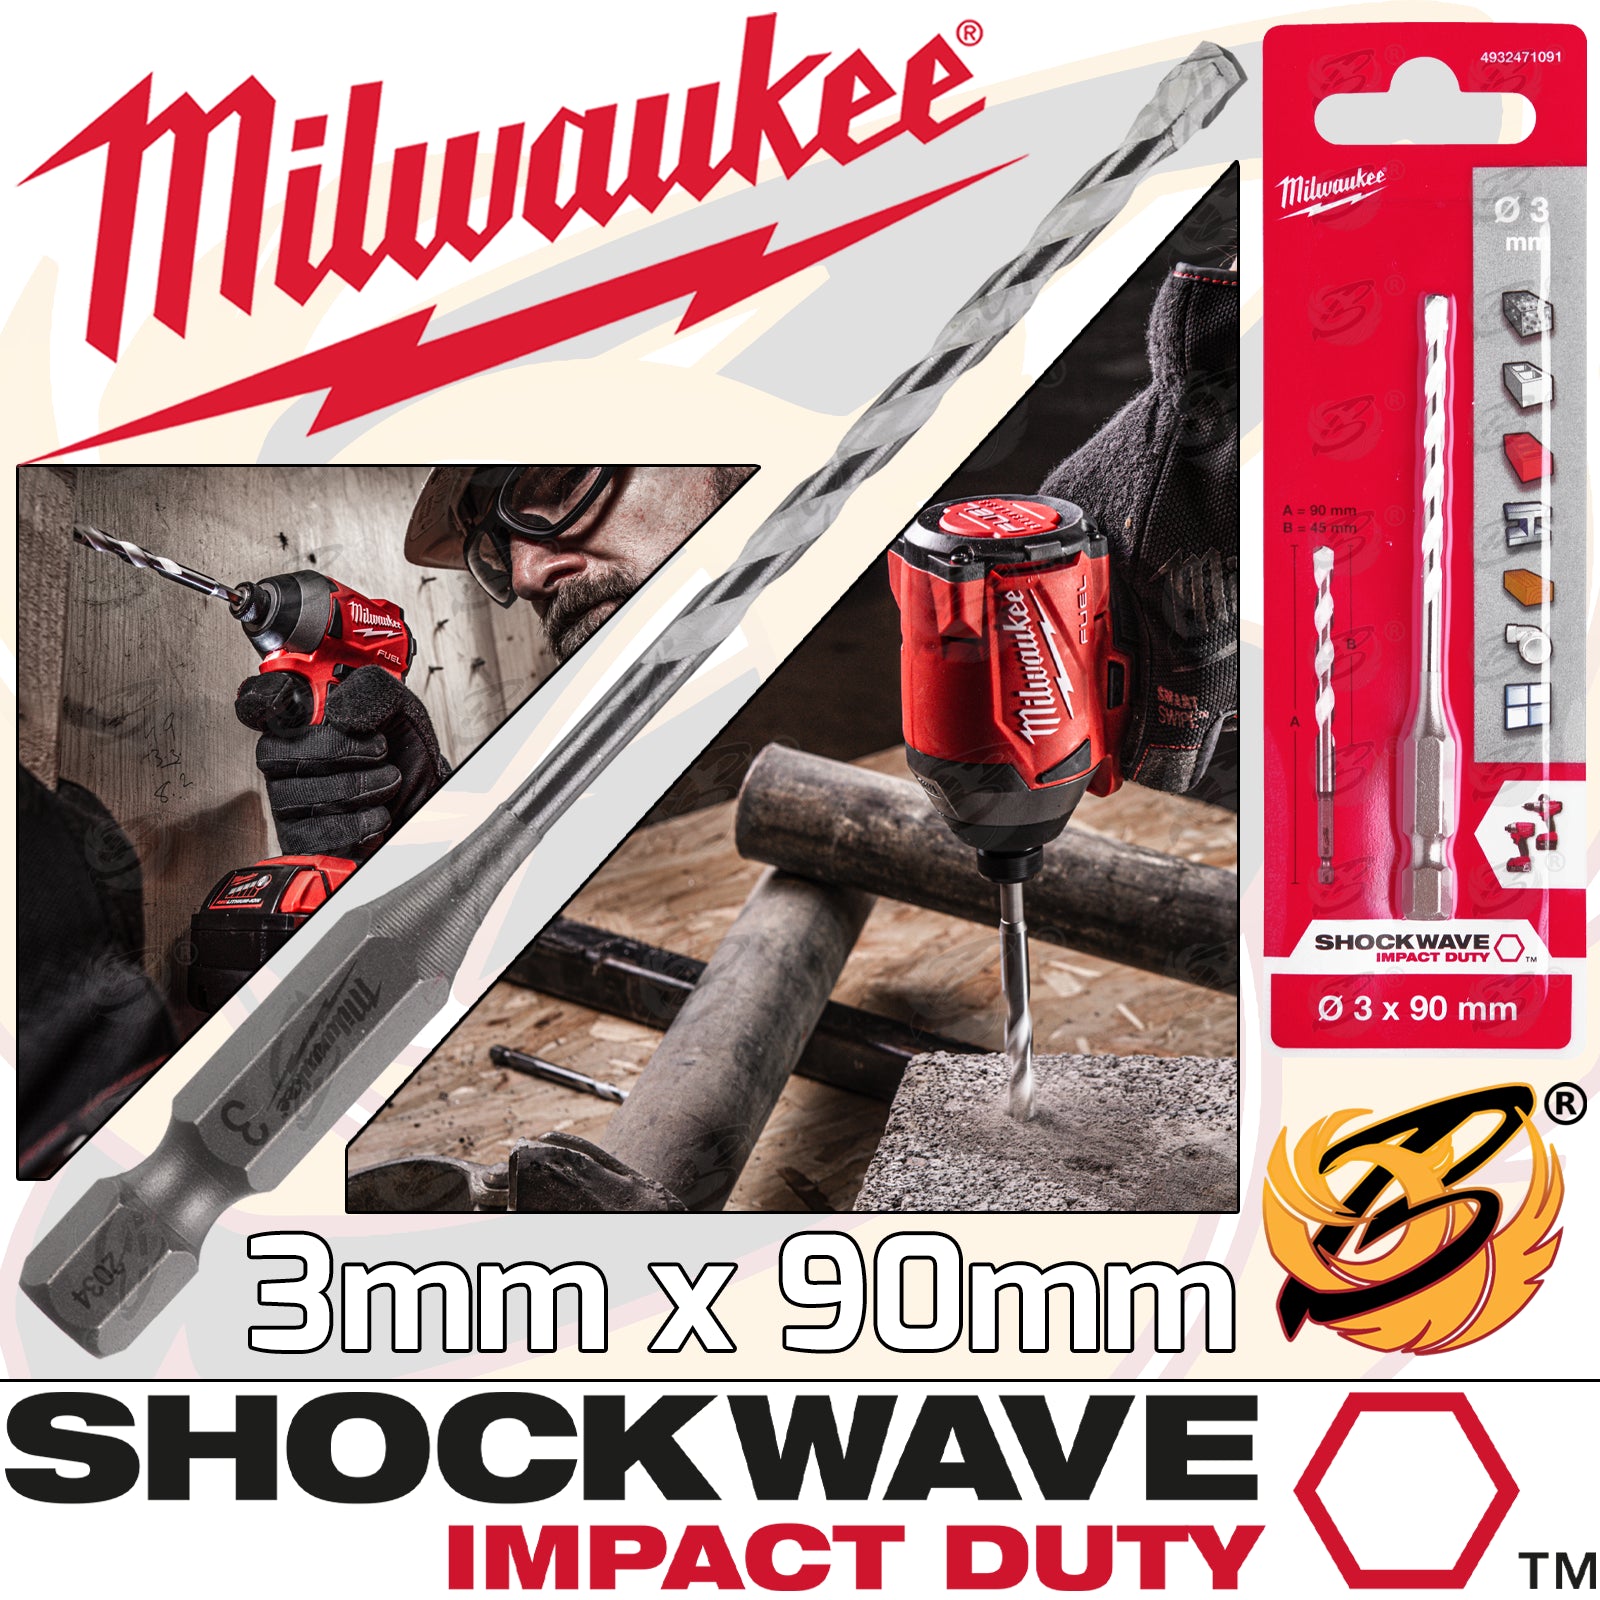 MILWAUKEE 3mm x 90mm MULTI MATERIAL DRILL BIT